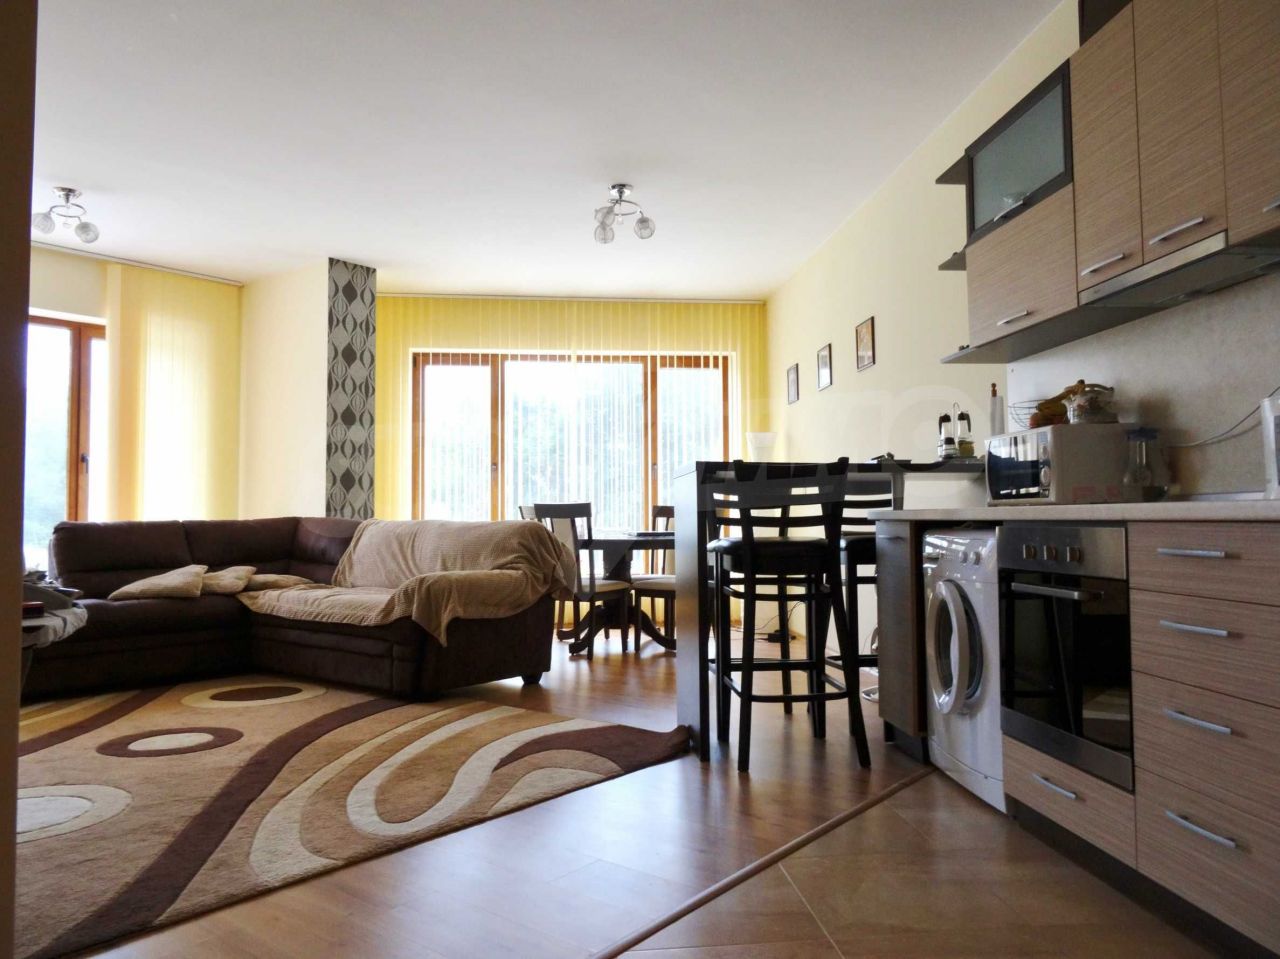 Apartment in Varna, Bulgaria, 73.88 sq.m - picture 1